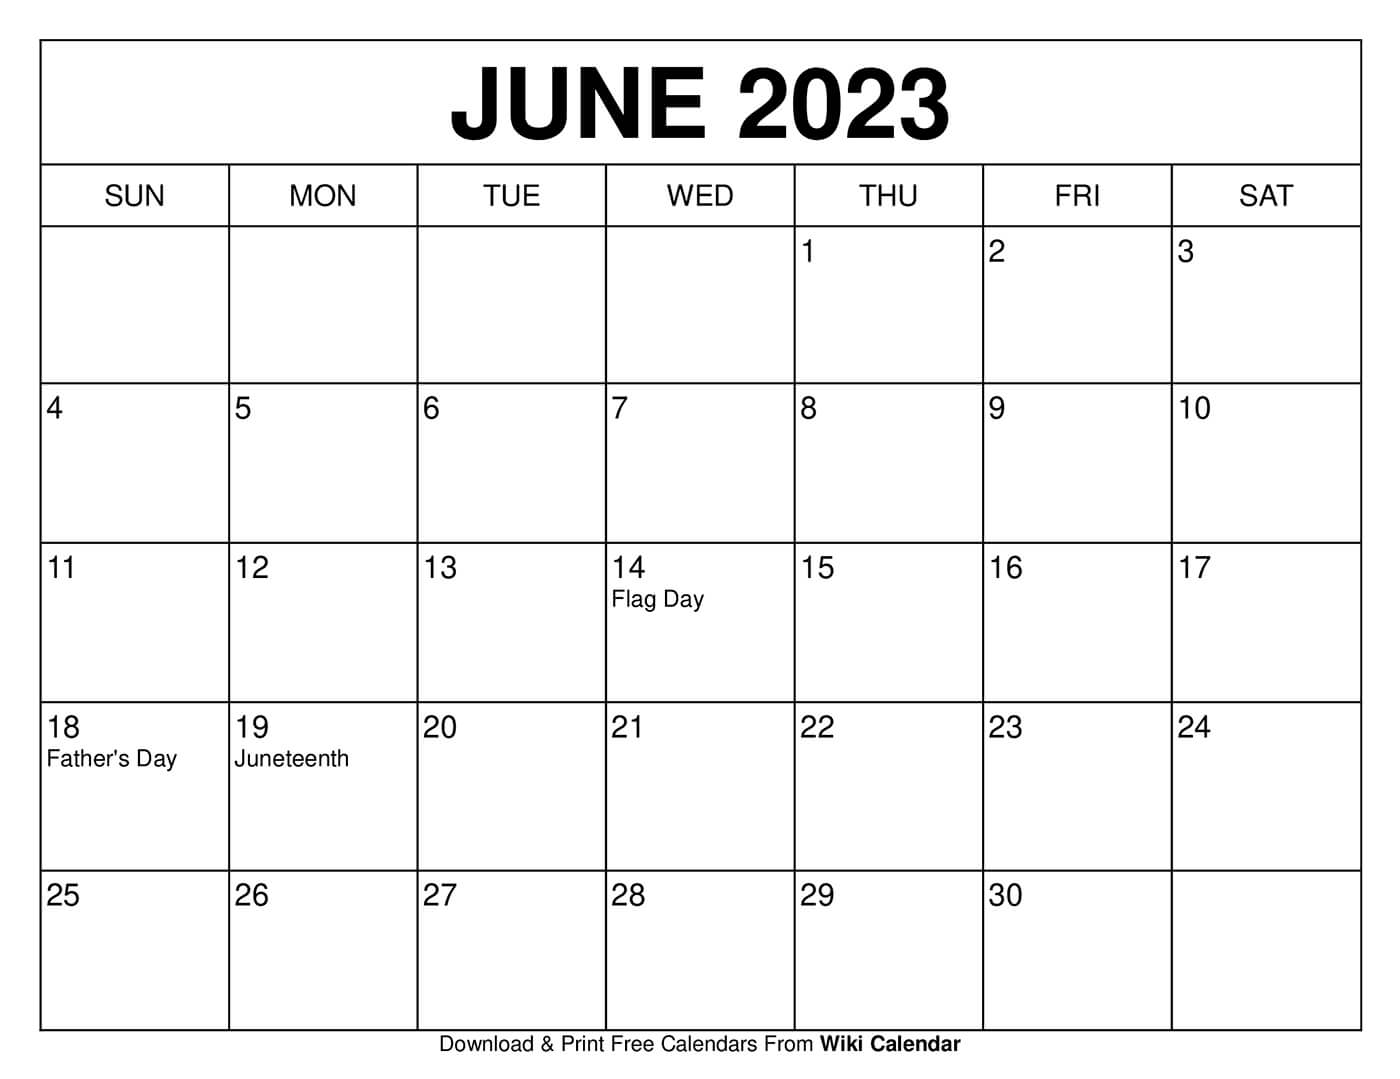 June 2023 Calendar Template Get Latest Map Update